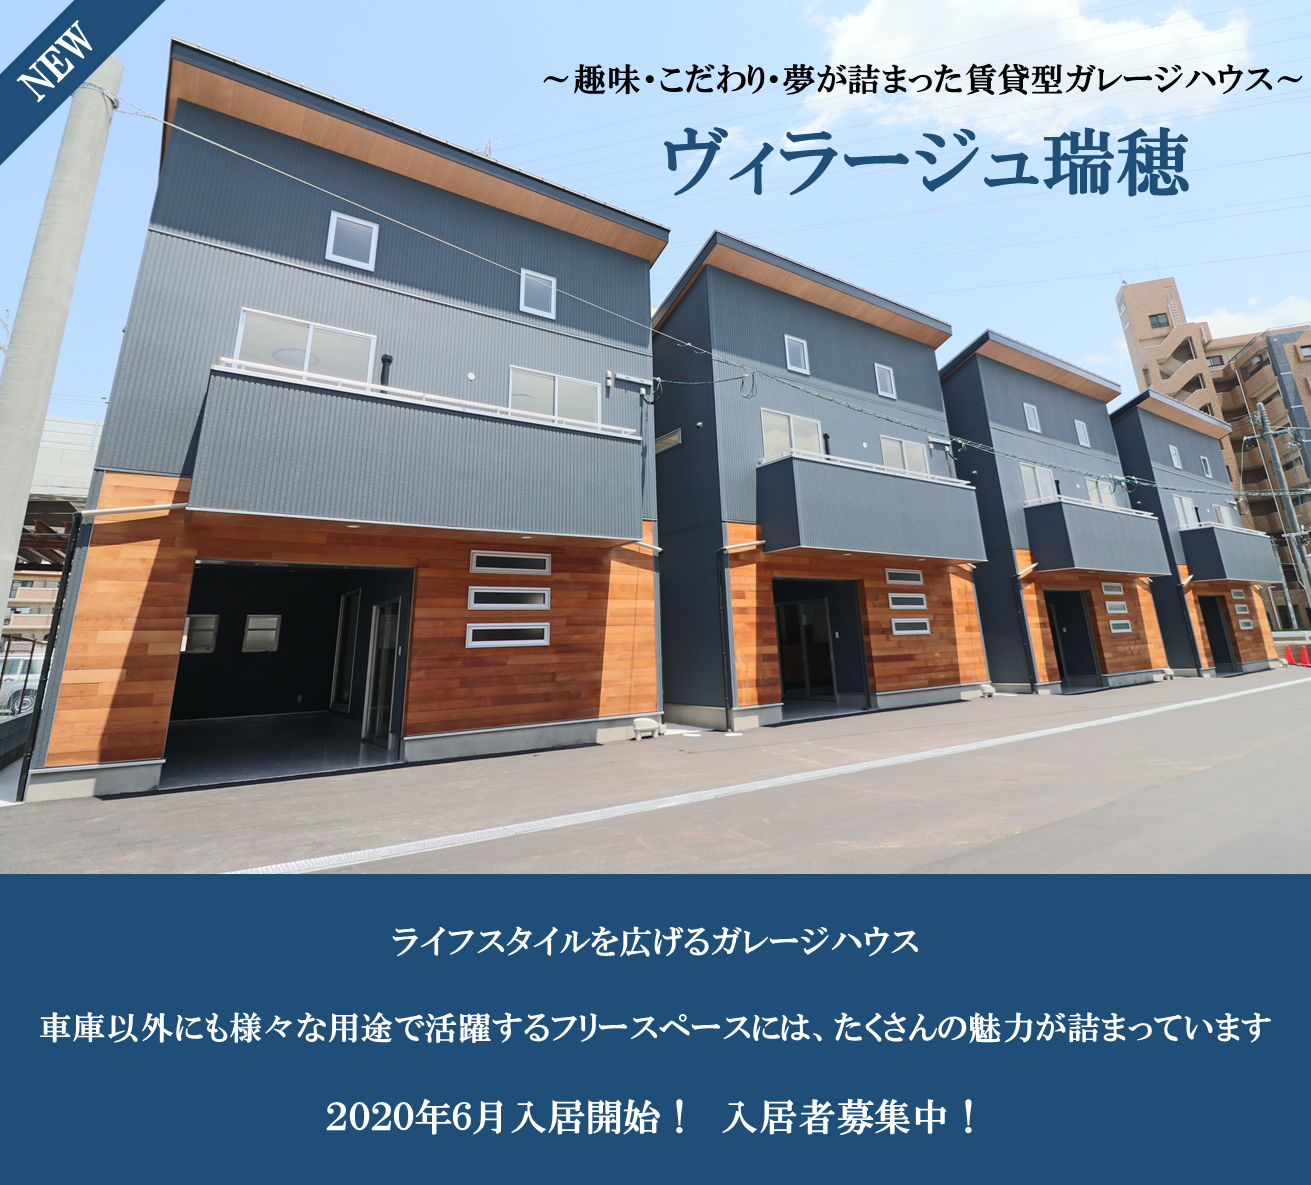 フリースペース ライフスタイルを広げる福岡のガレージハウス 戸建賃貸住宅 ヴィラージュ瑞穂 趣味のスペース